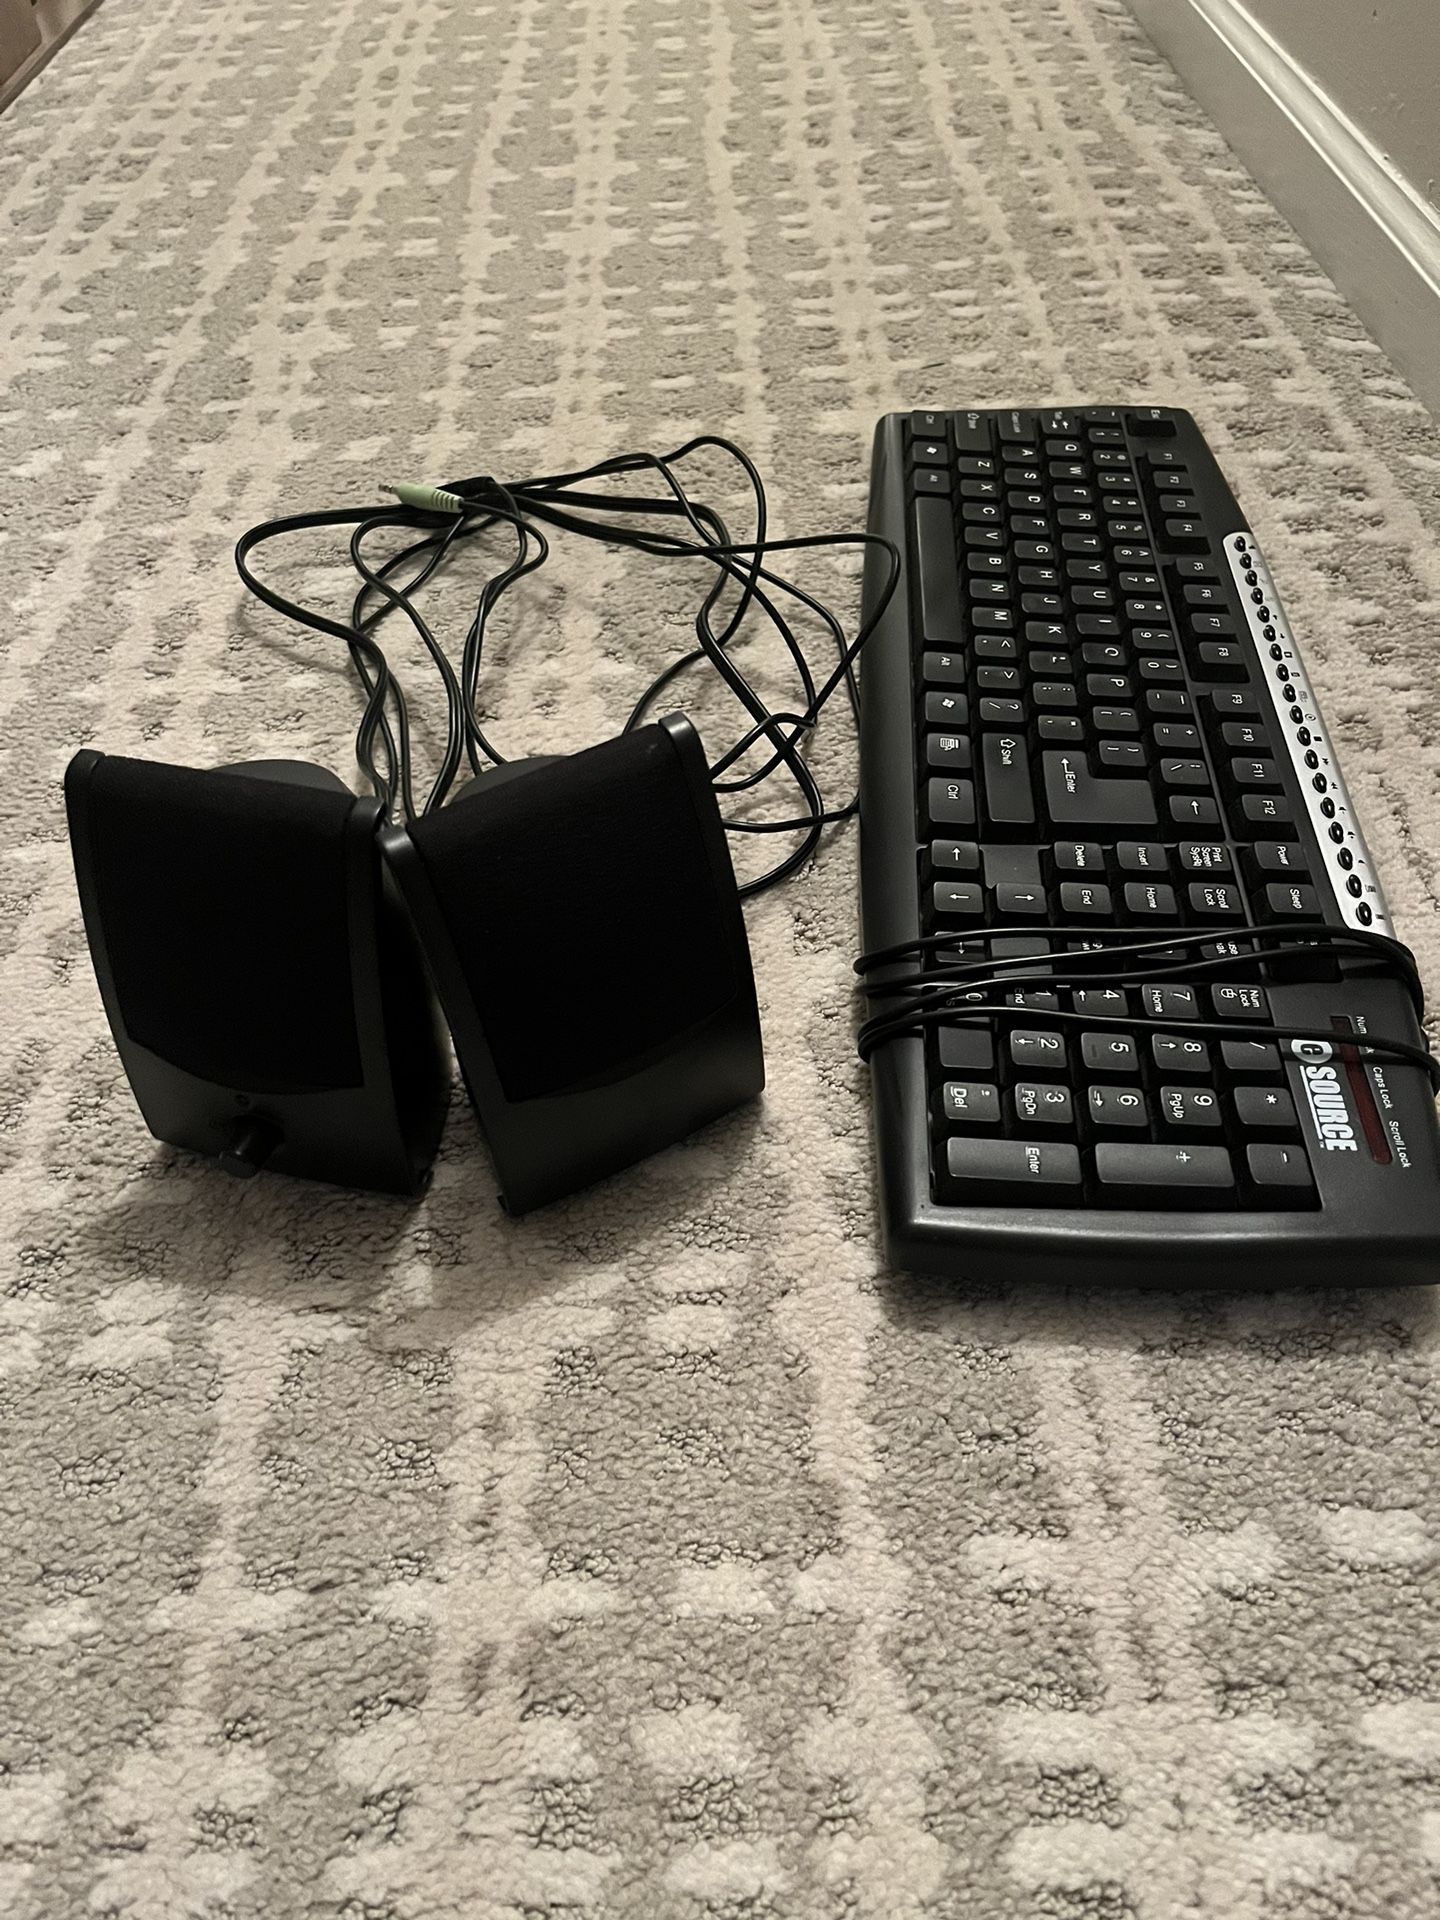 Speakers & Keyboard